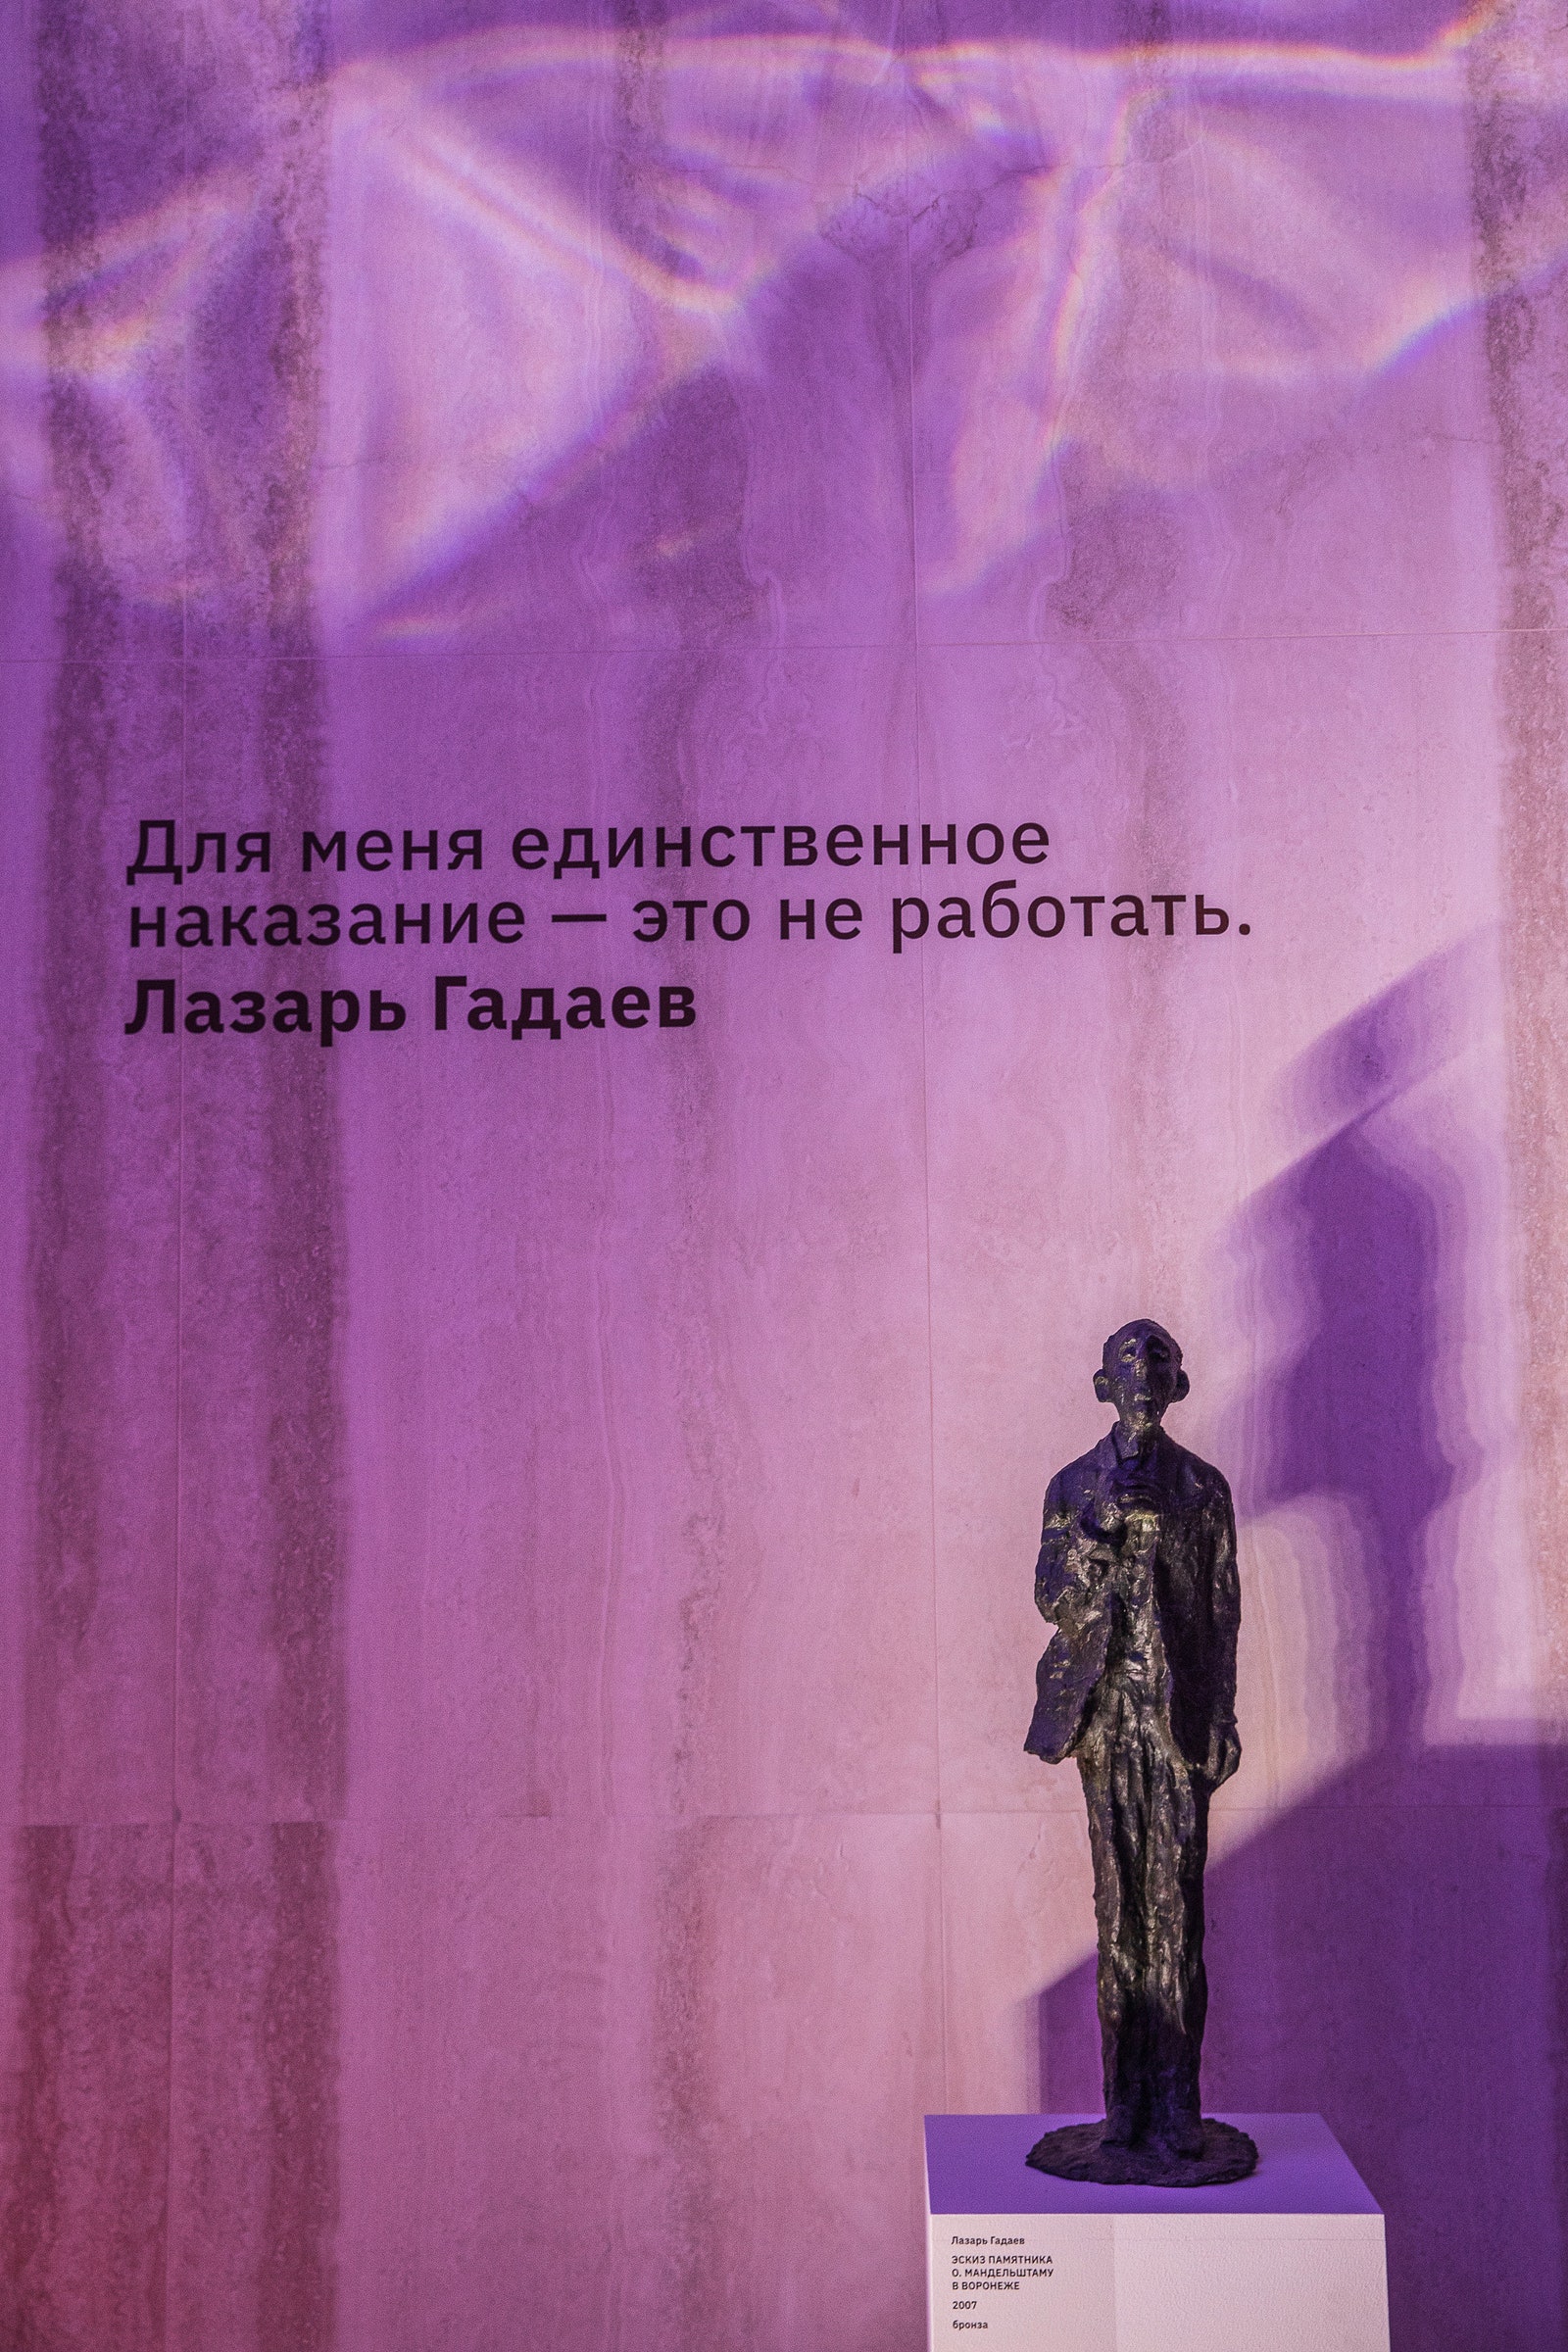 “Лирический эпос Лазаря Гадаева” выставка в артпространстве Victory Park Residences